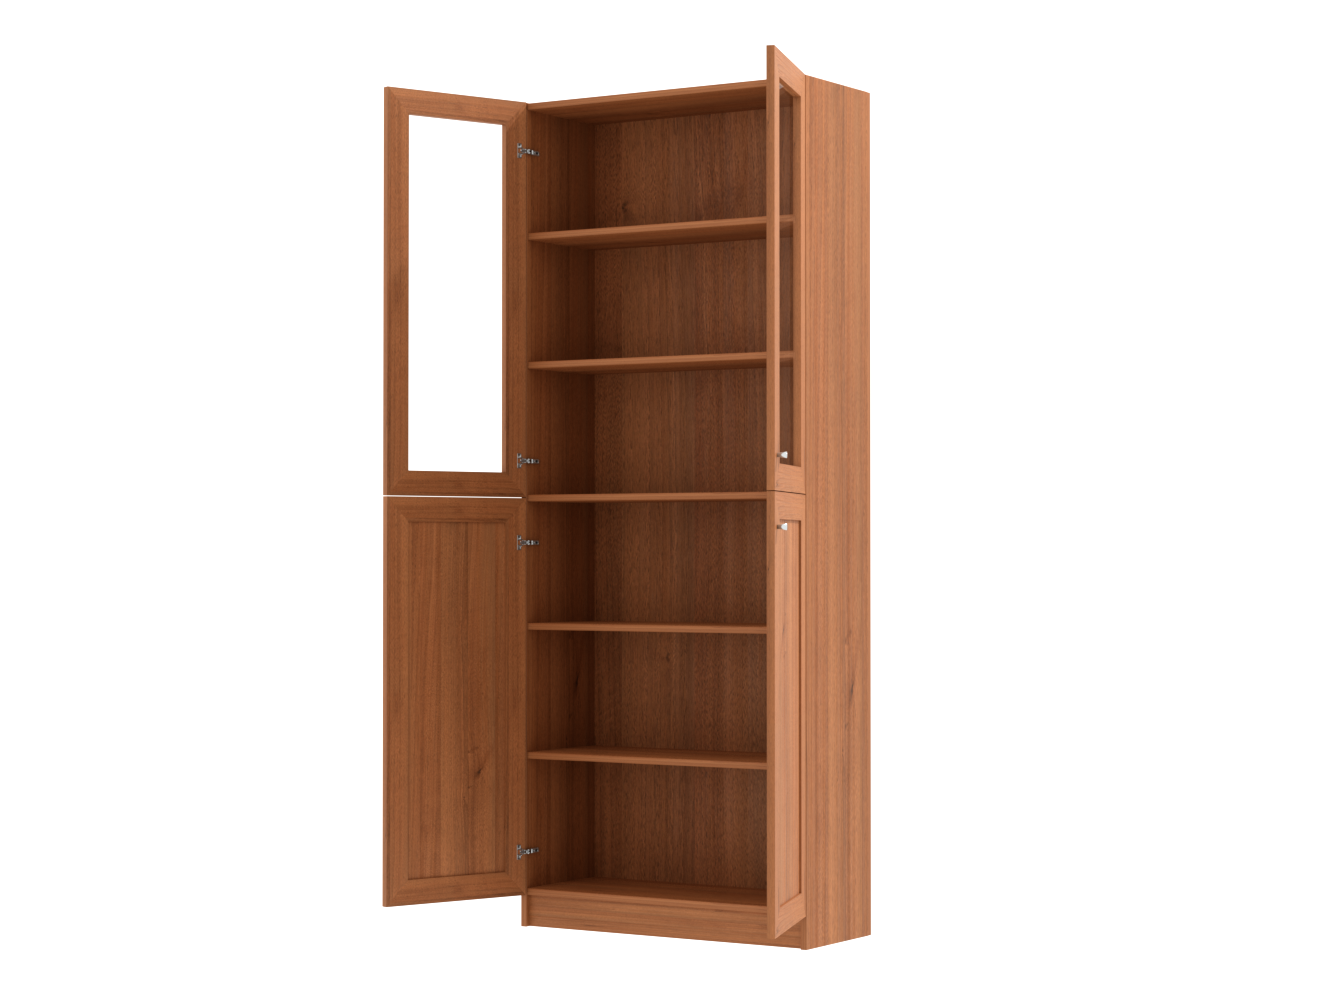  Книжный шкаф Билли 334 walnut guarneri ИКЕА (IKEA) изображение товара